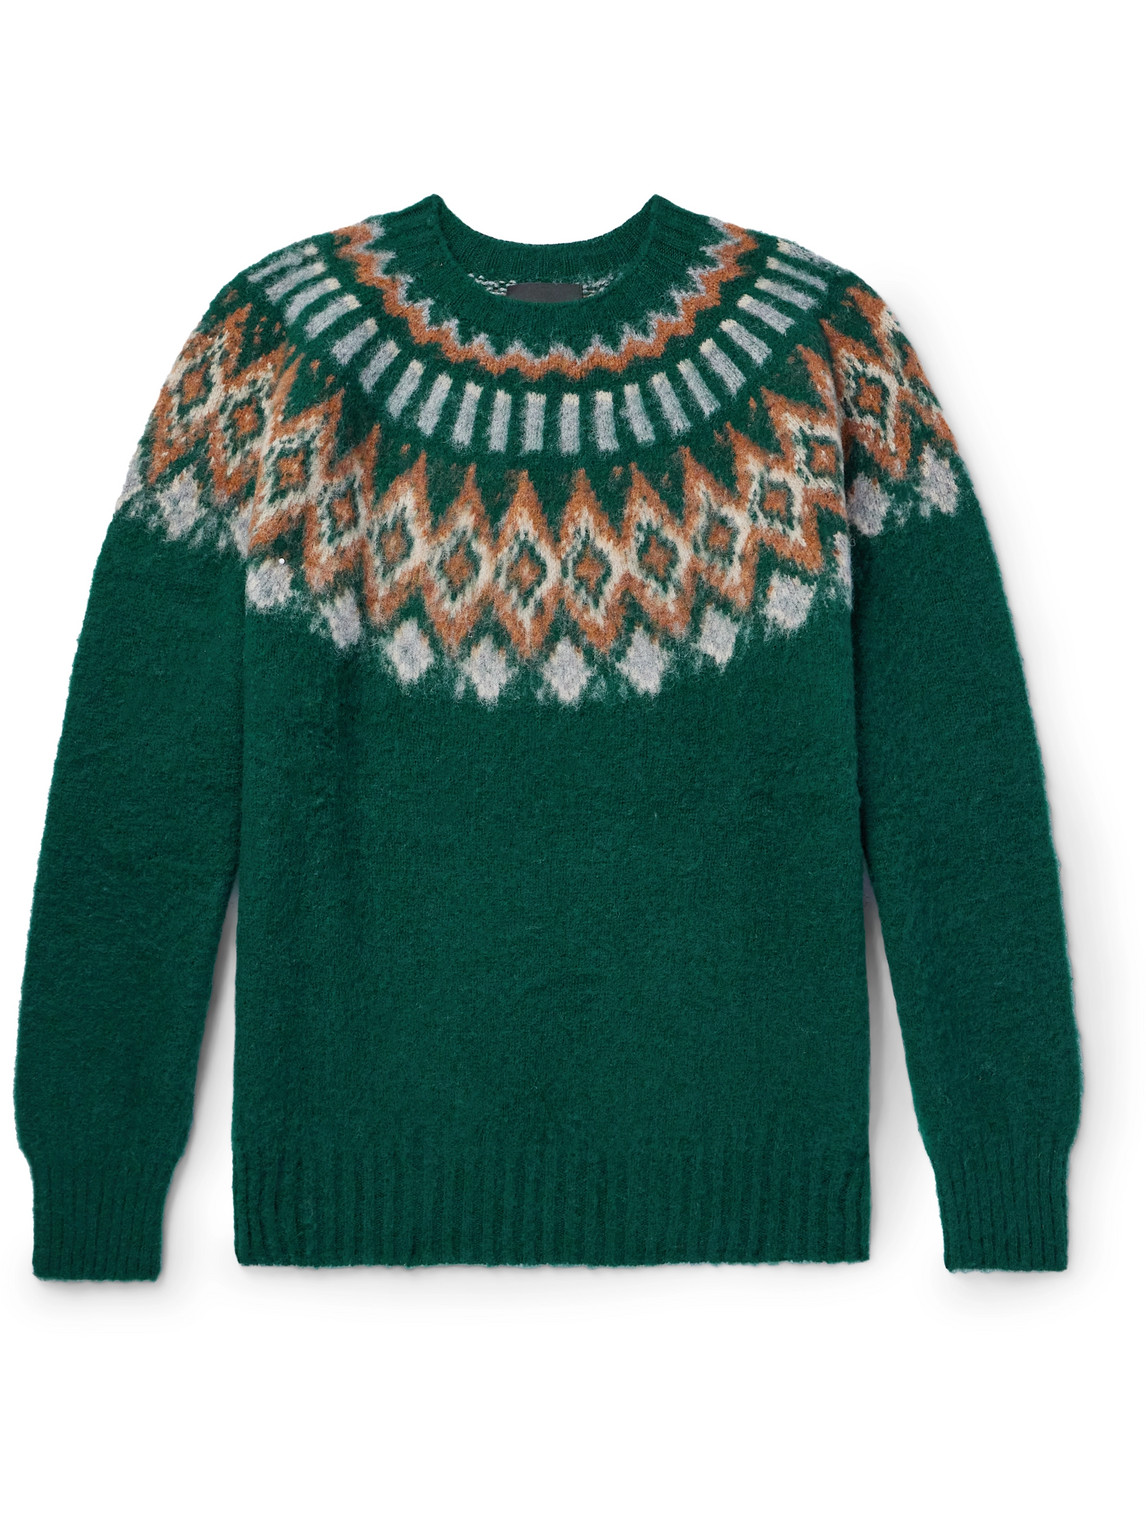 Howlin' Fair Isle Wool Sweater In Green